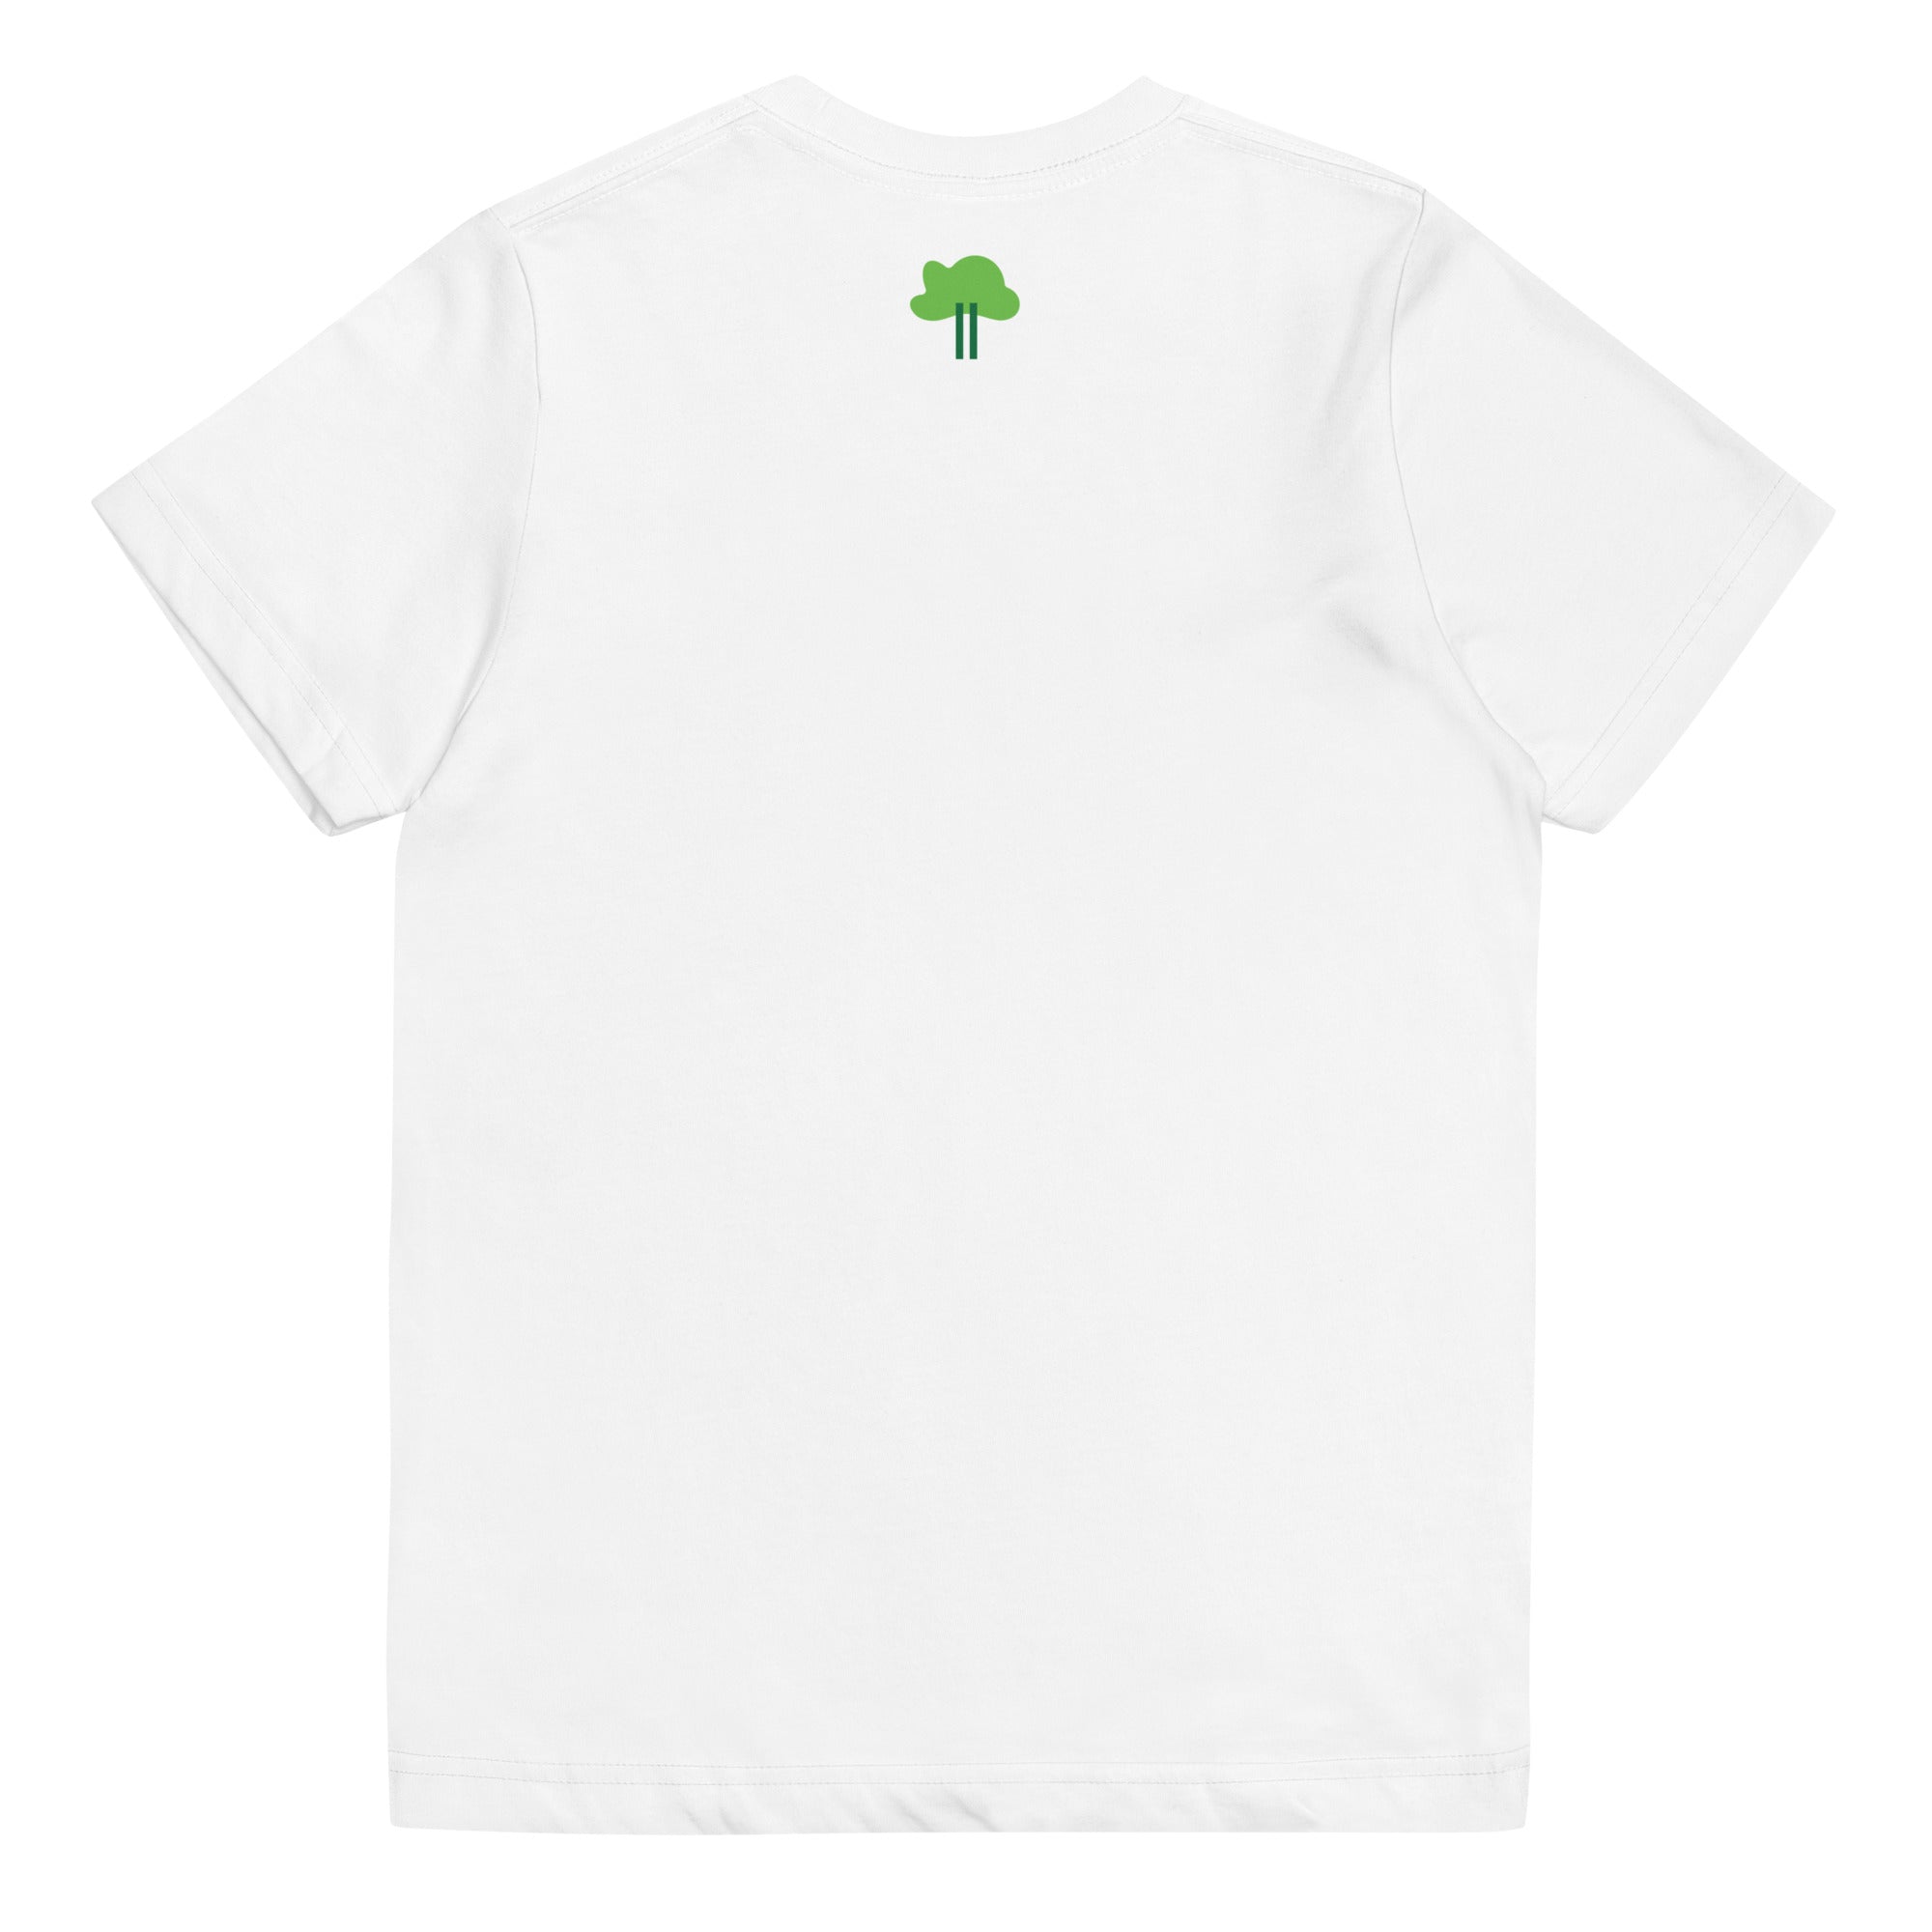 I Temp - Sabana - K10 | Youth jersey t-shirt